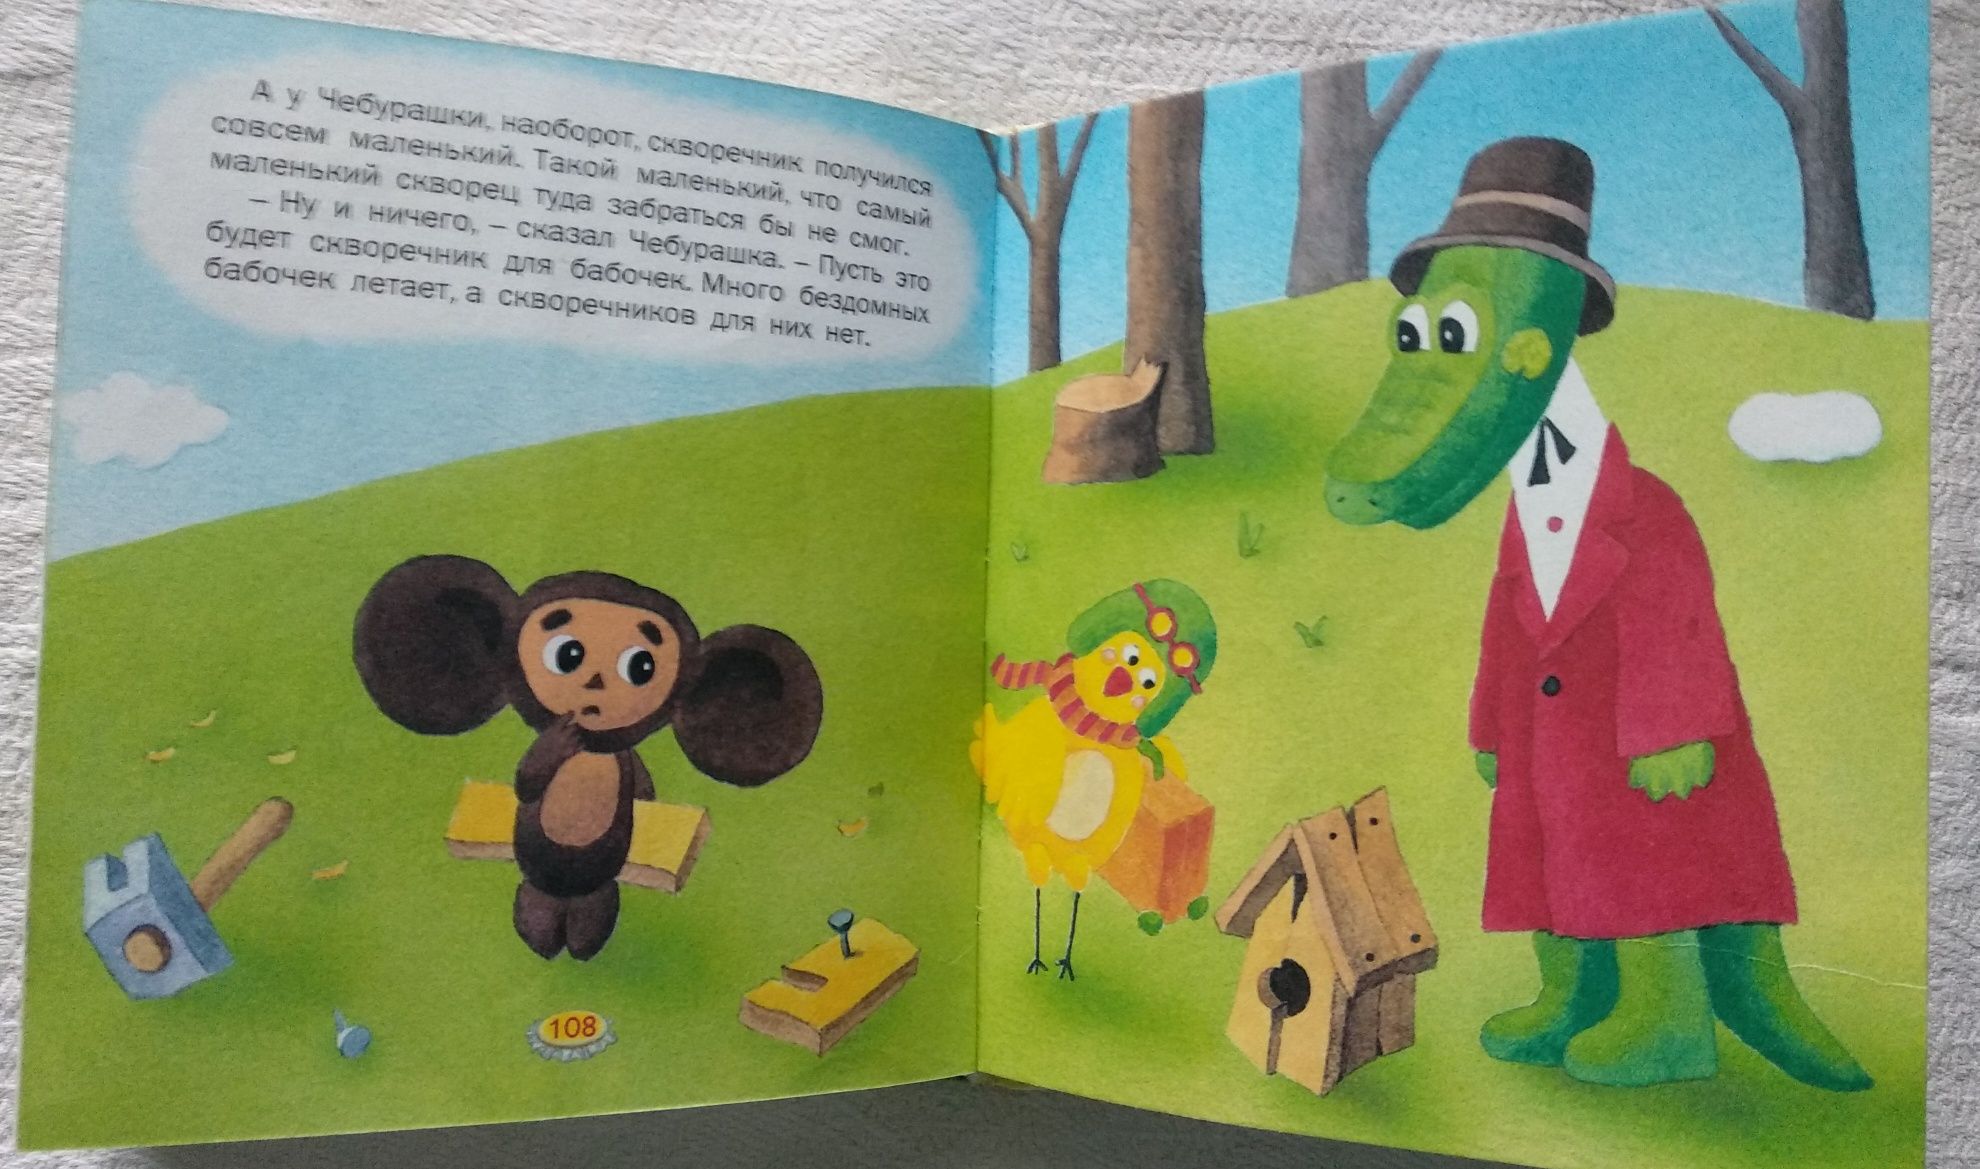 "Любимые маленькие сказки", детская книга